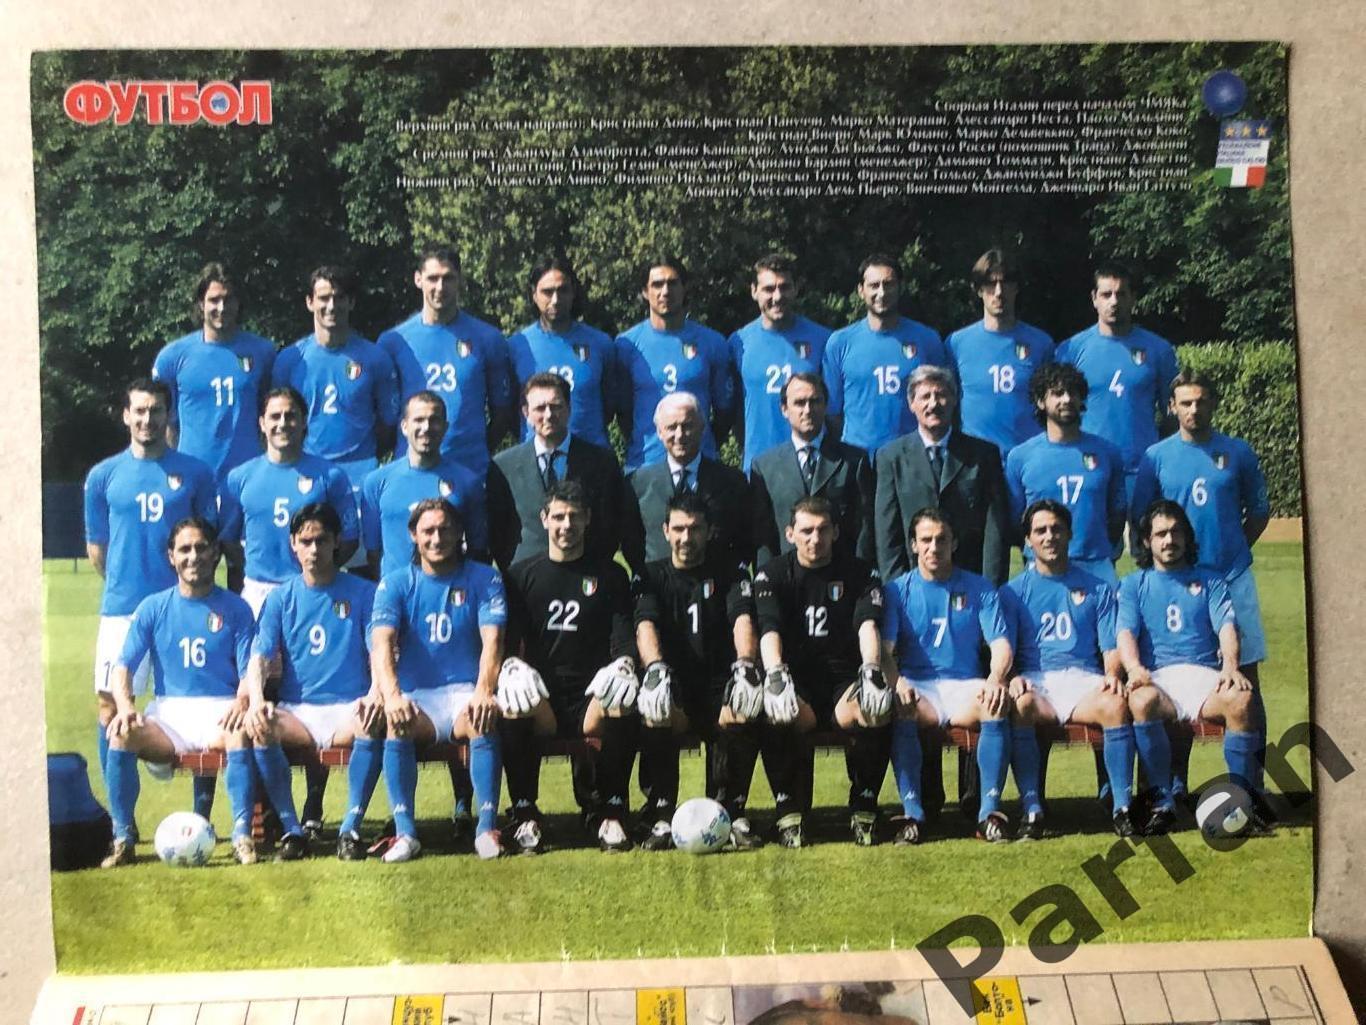 Журнал Футбол 2002 №25 Італія/Корея 1